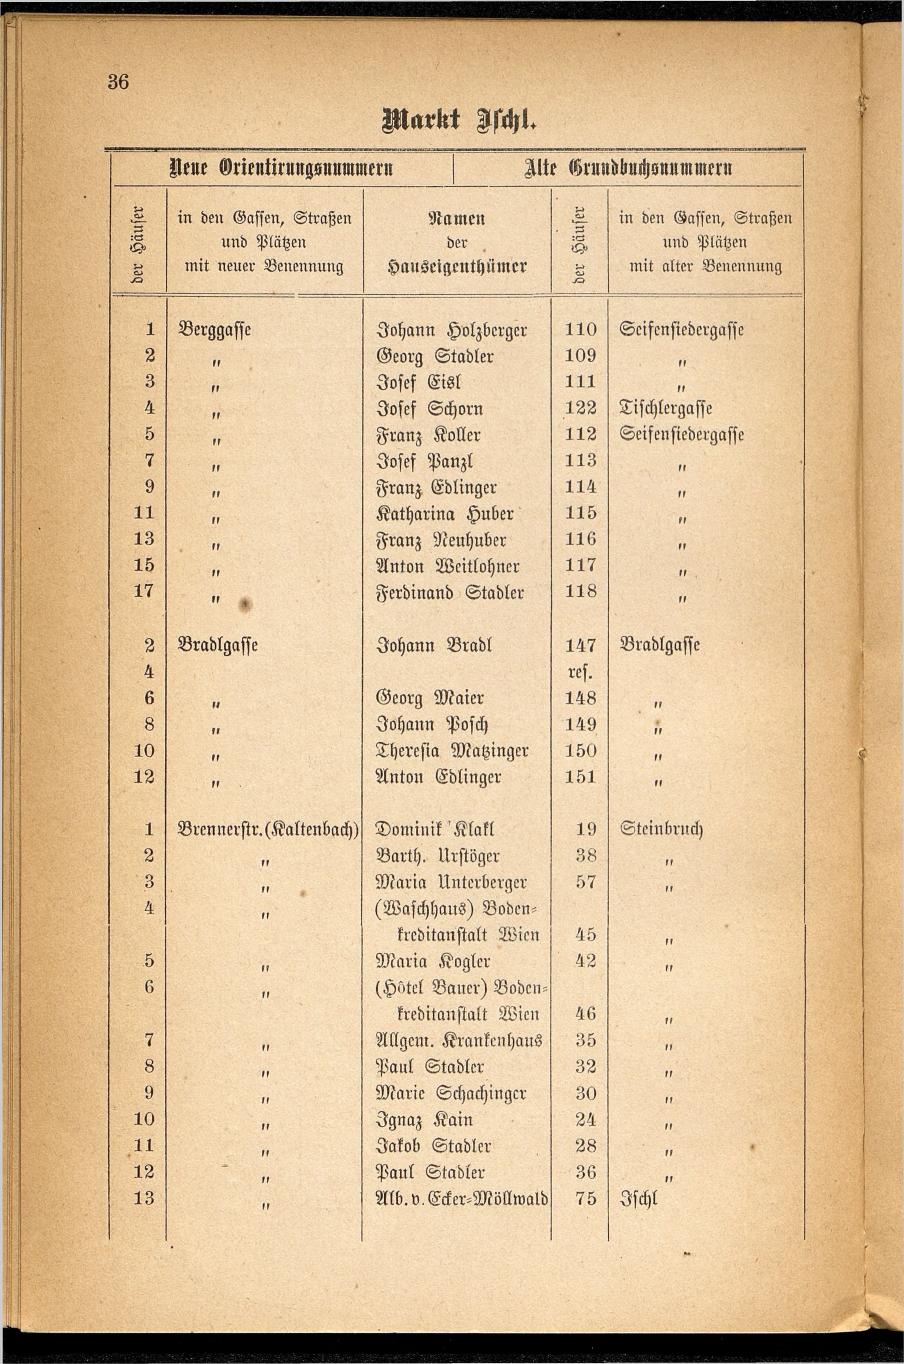 Häuser-Verzeichnis des Marktes und Kurortes Ischl nach den neuen Orientirungsnummern 1881 - Seite 40